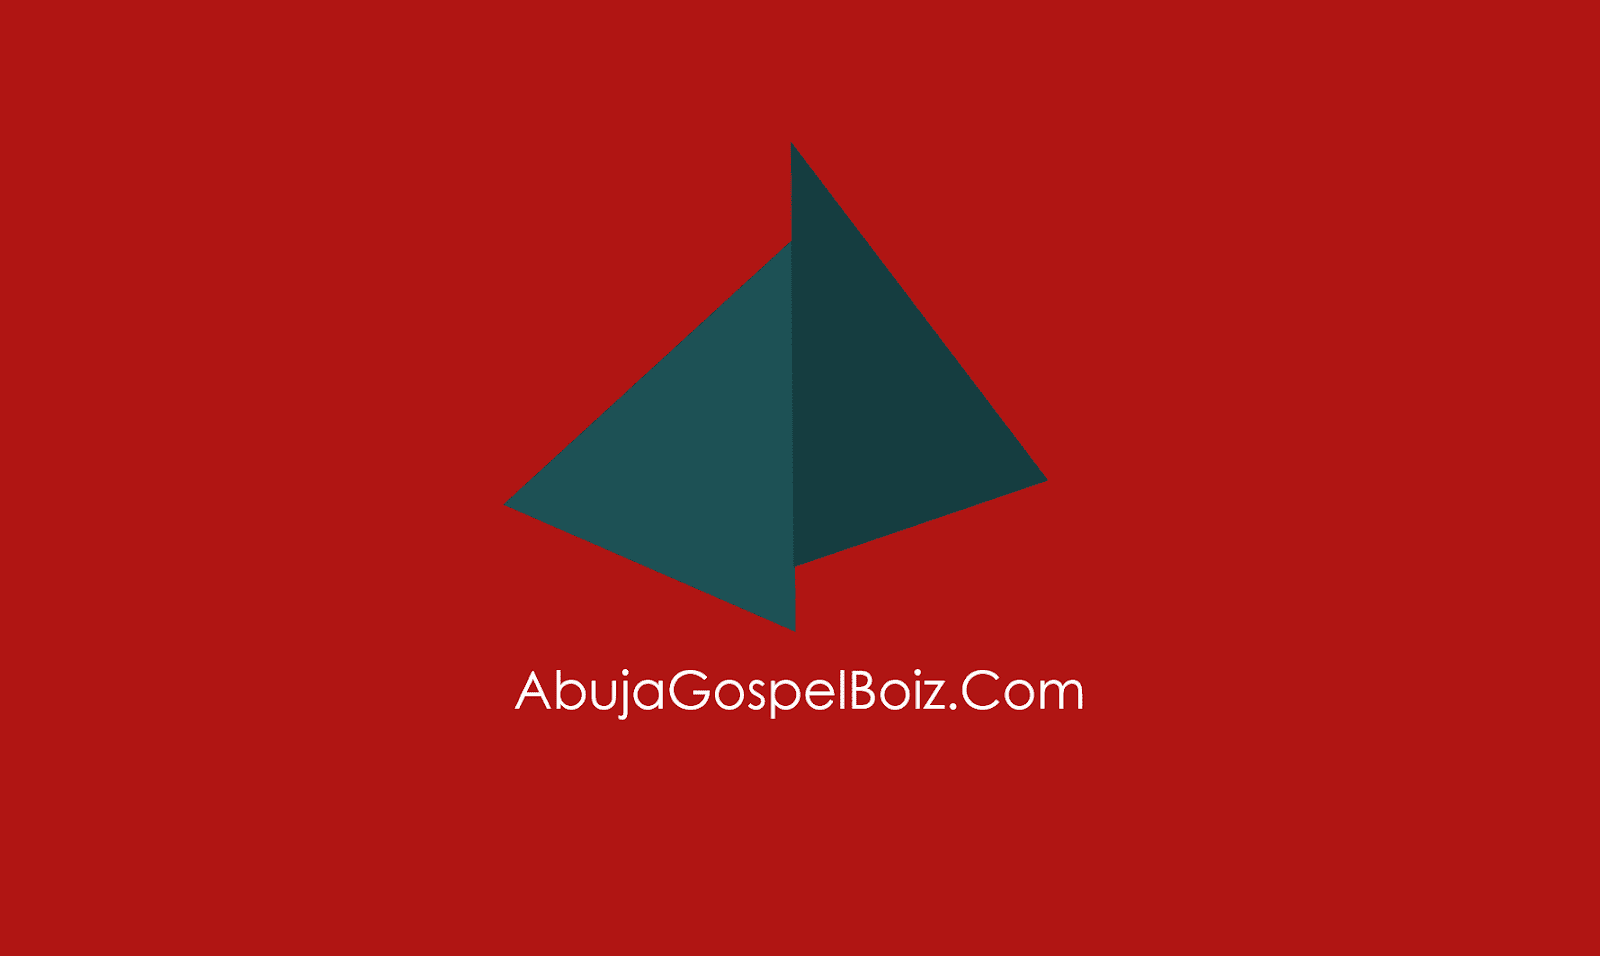 Abuja Gospel Boiz